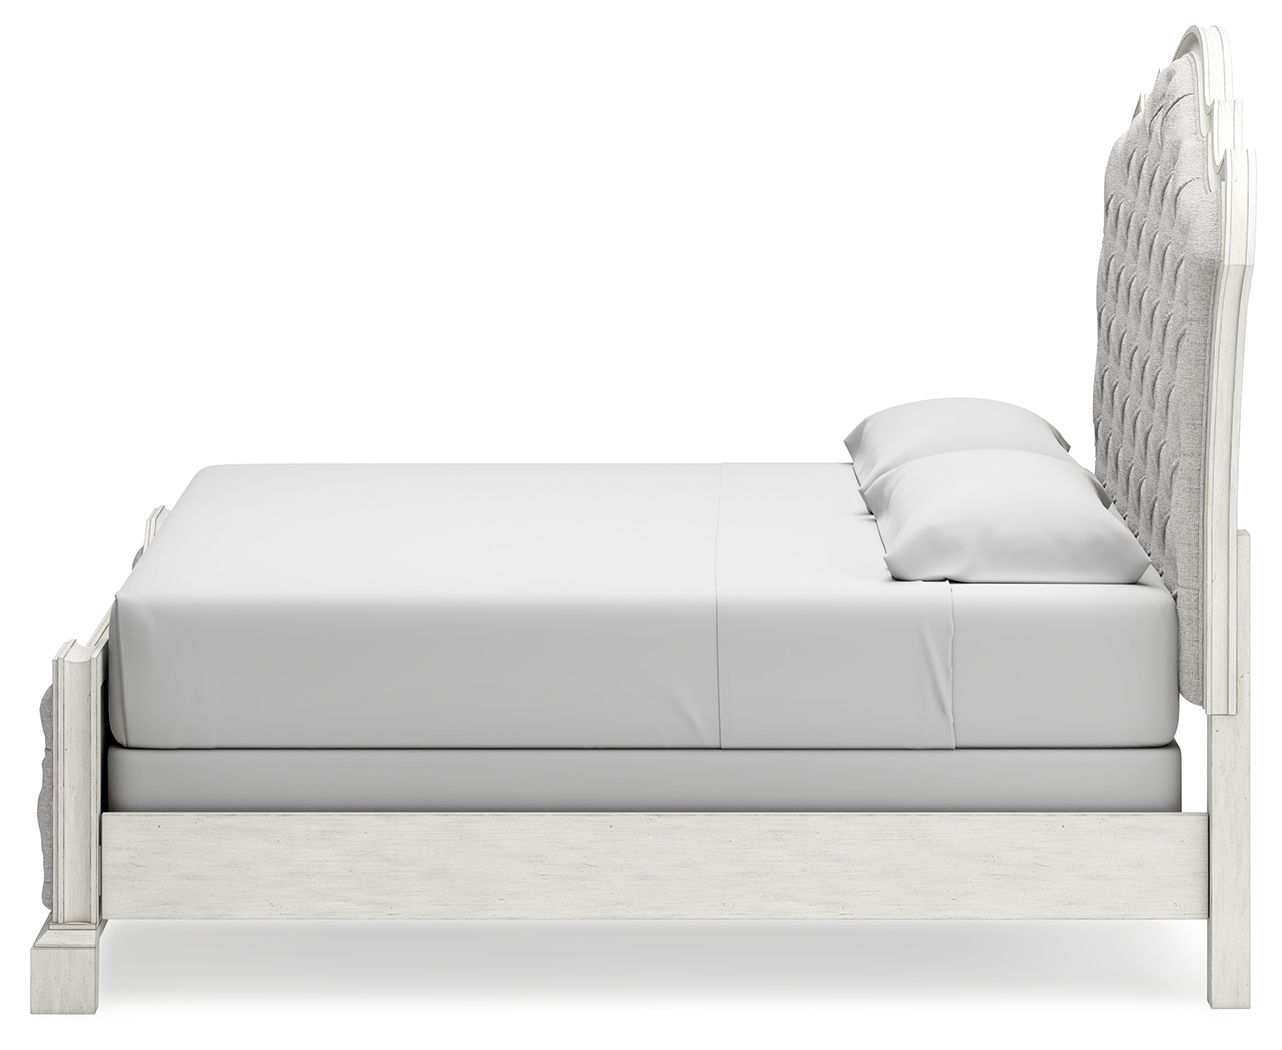 Arlendyne - Antique White - California King Upholstered Bed